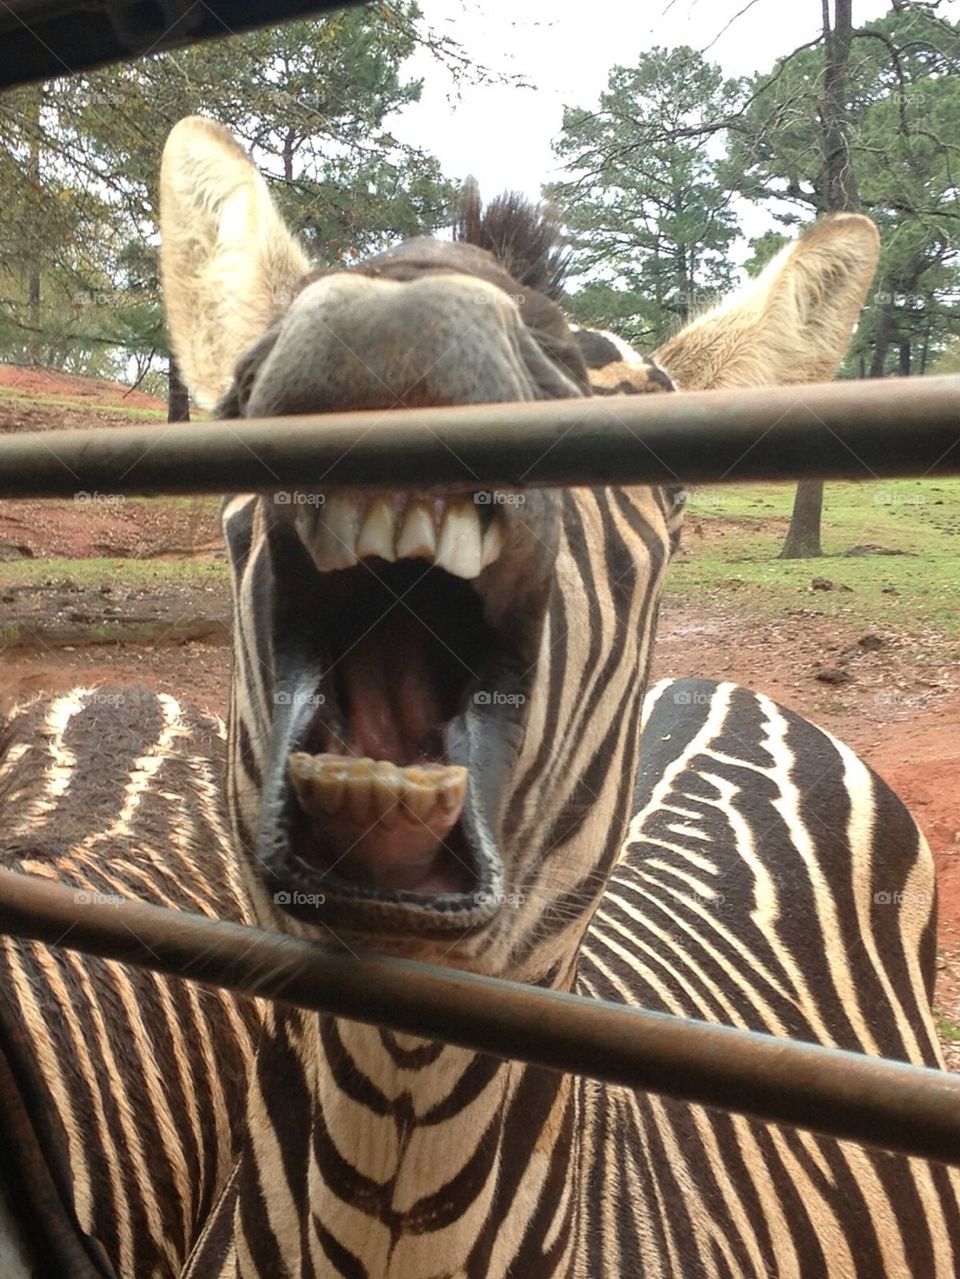 Zebra teeth